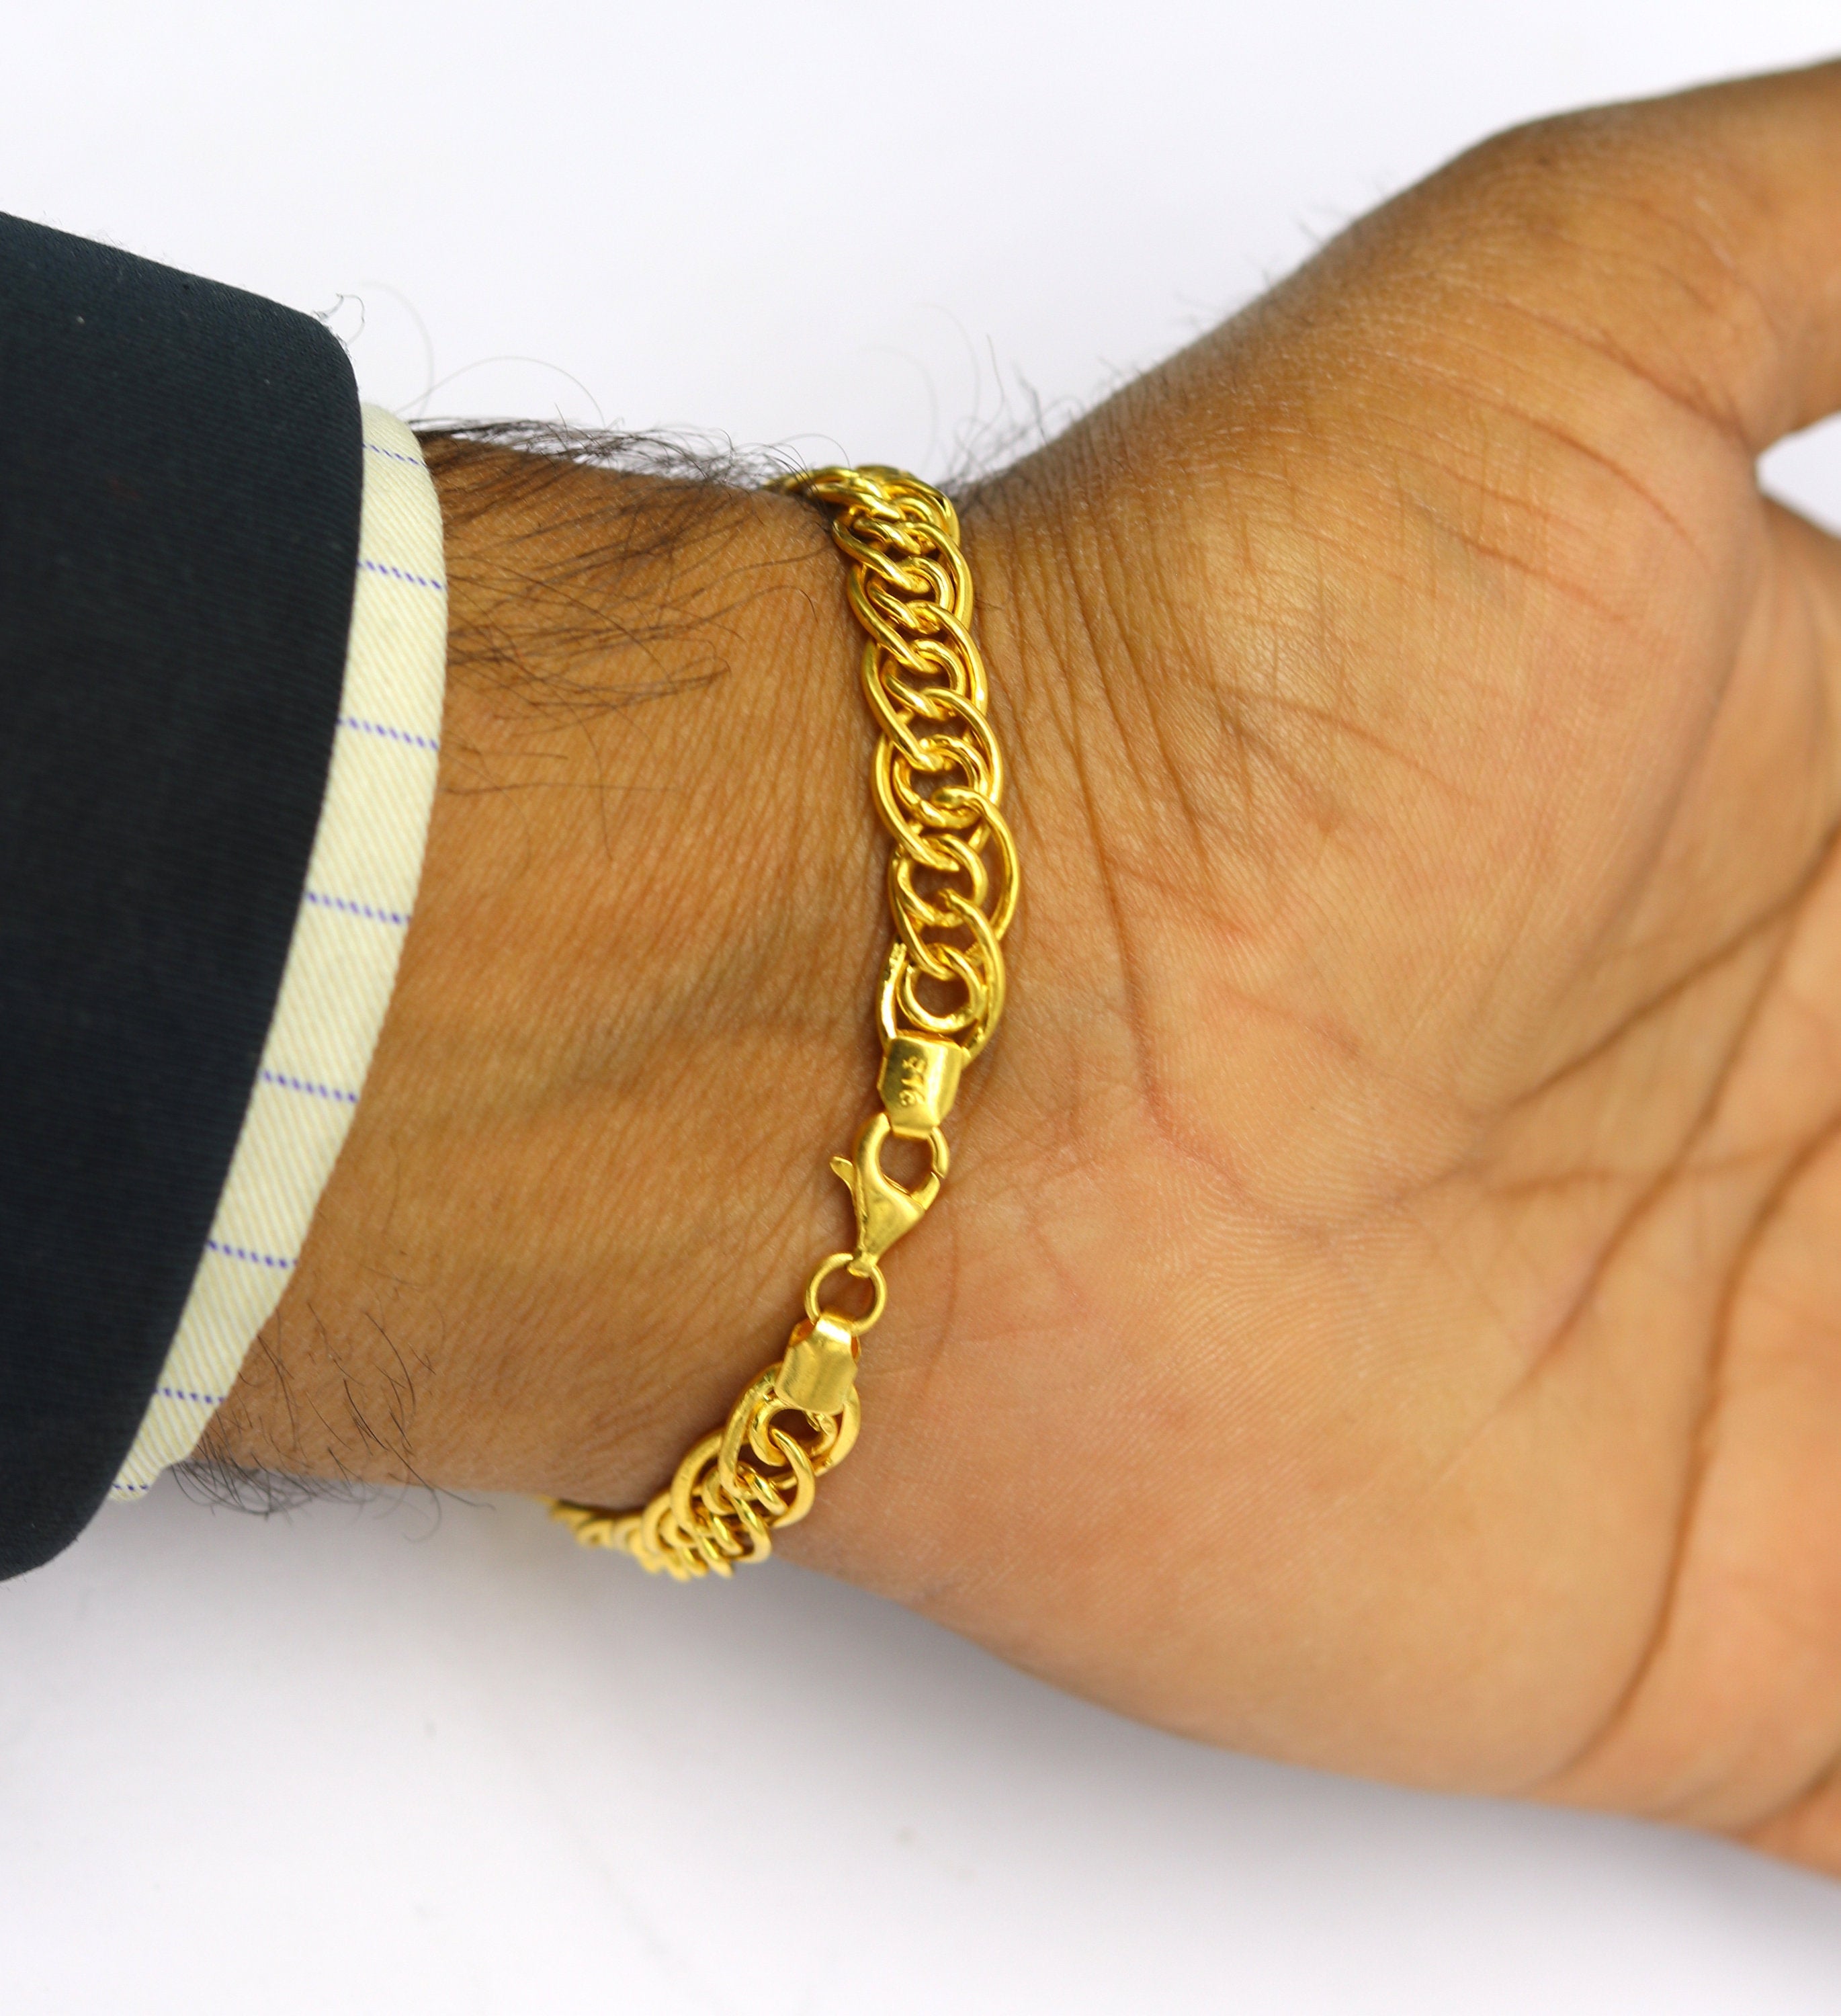 Double Link Gold Bracelet | Charm Bracelet NYC | Gold Bracelets NYC